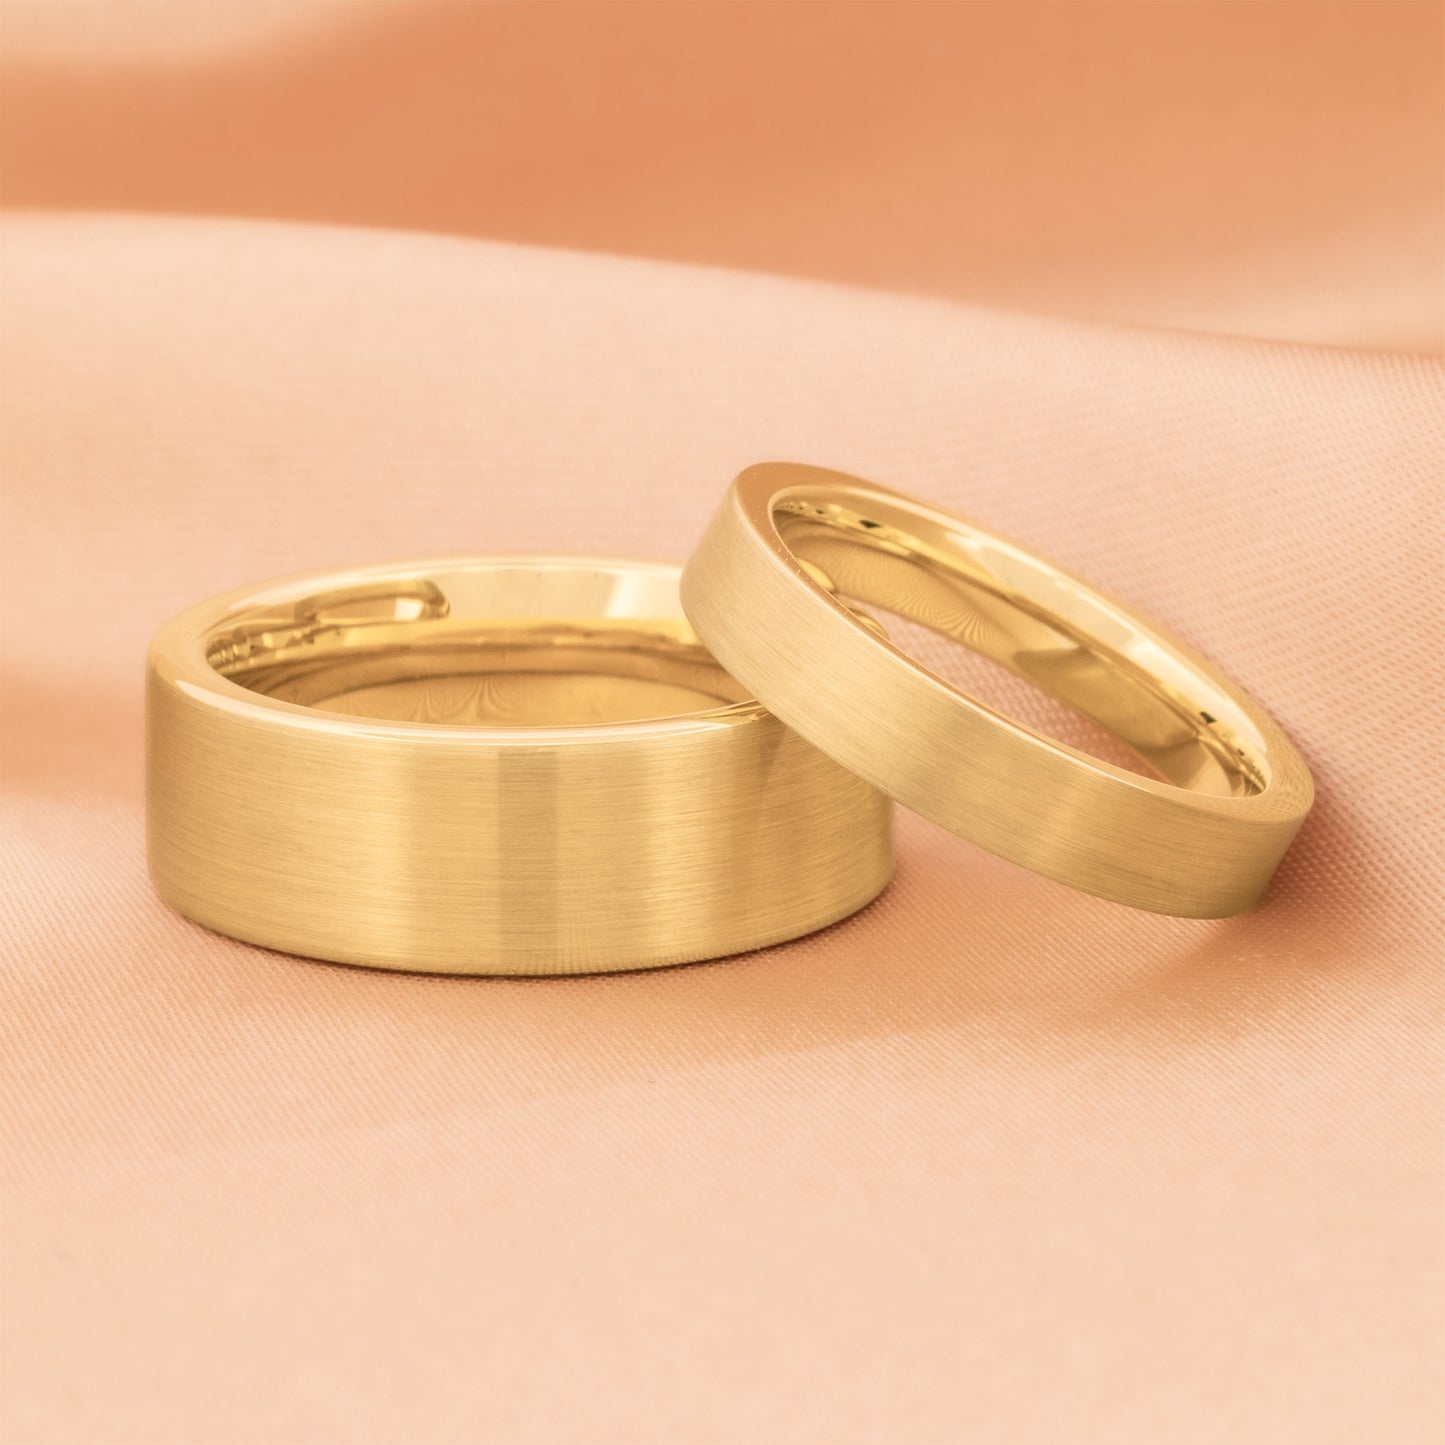 Juego de alianzas de boda a juego para pareja en oro amarillo cepillado con tungsteno